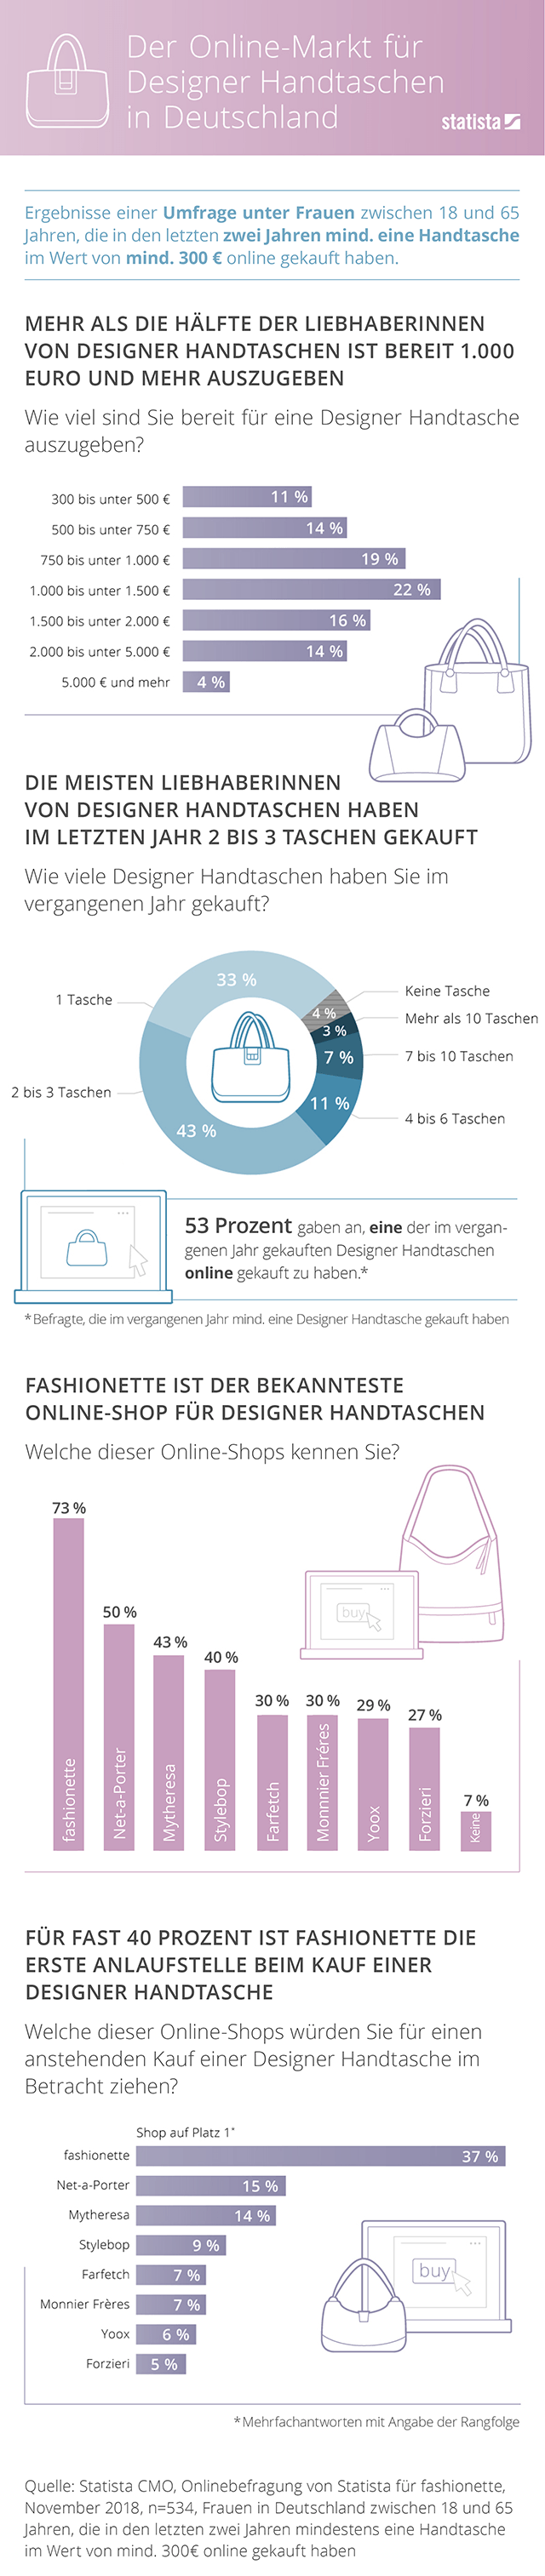 Studie zum Online-Markt für Designer Handtaschen in Deutschland